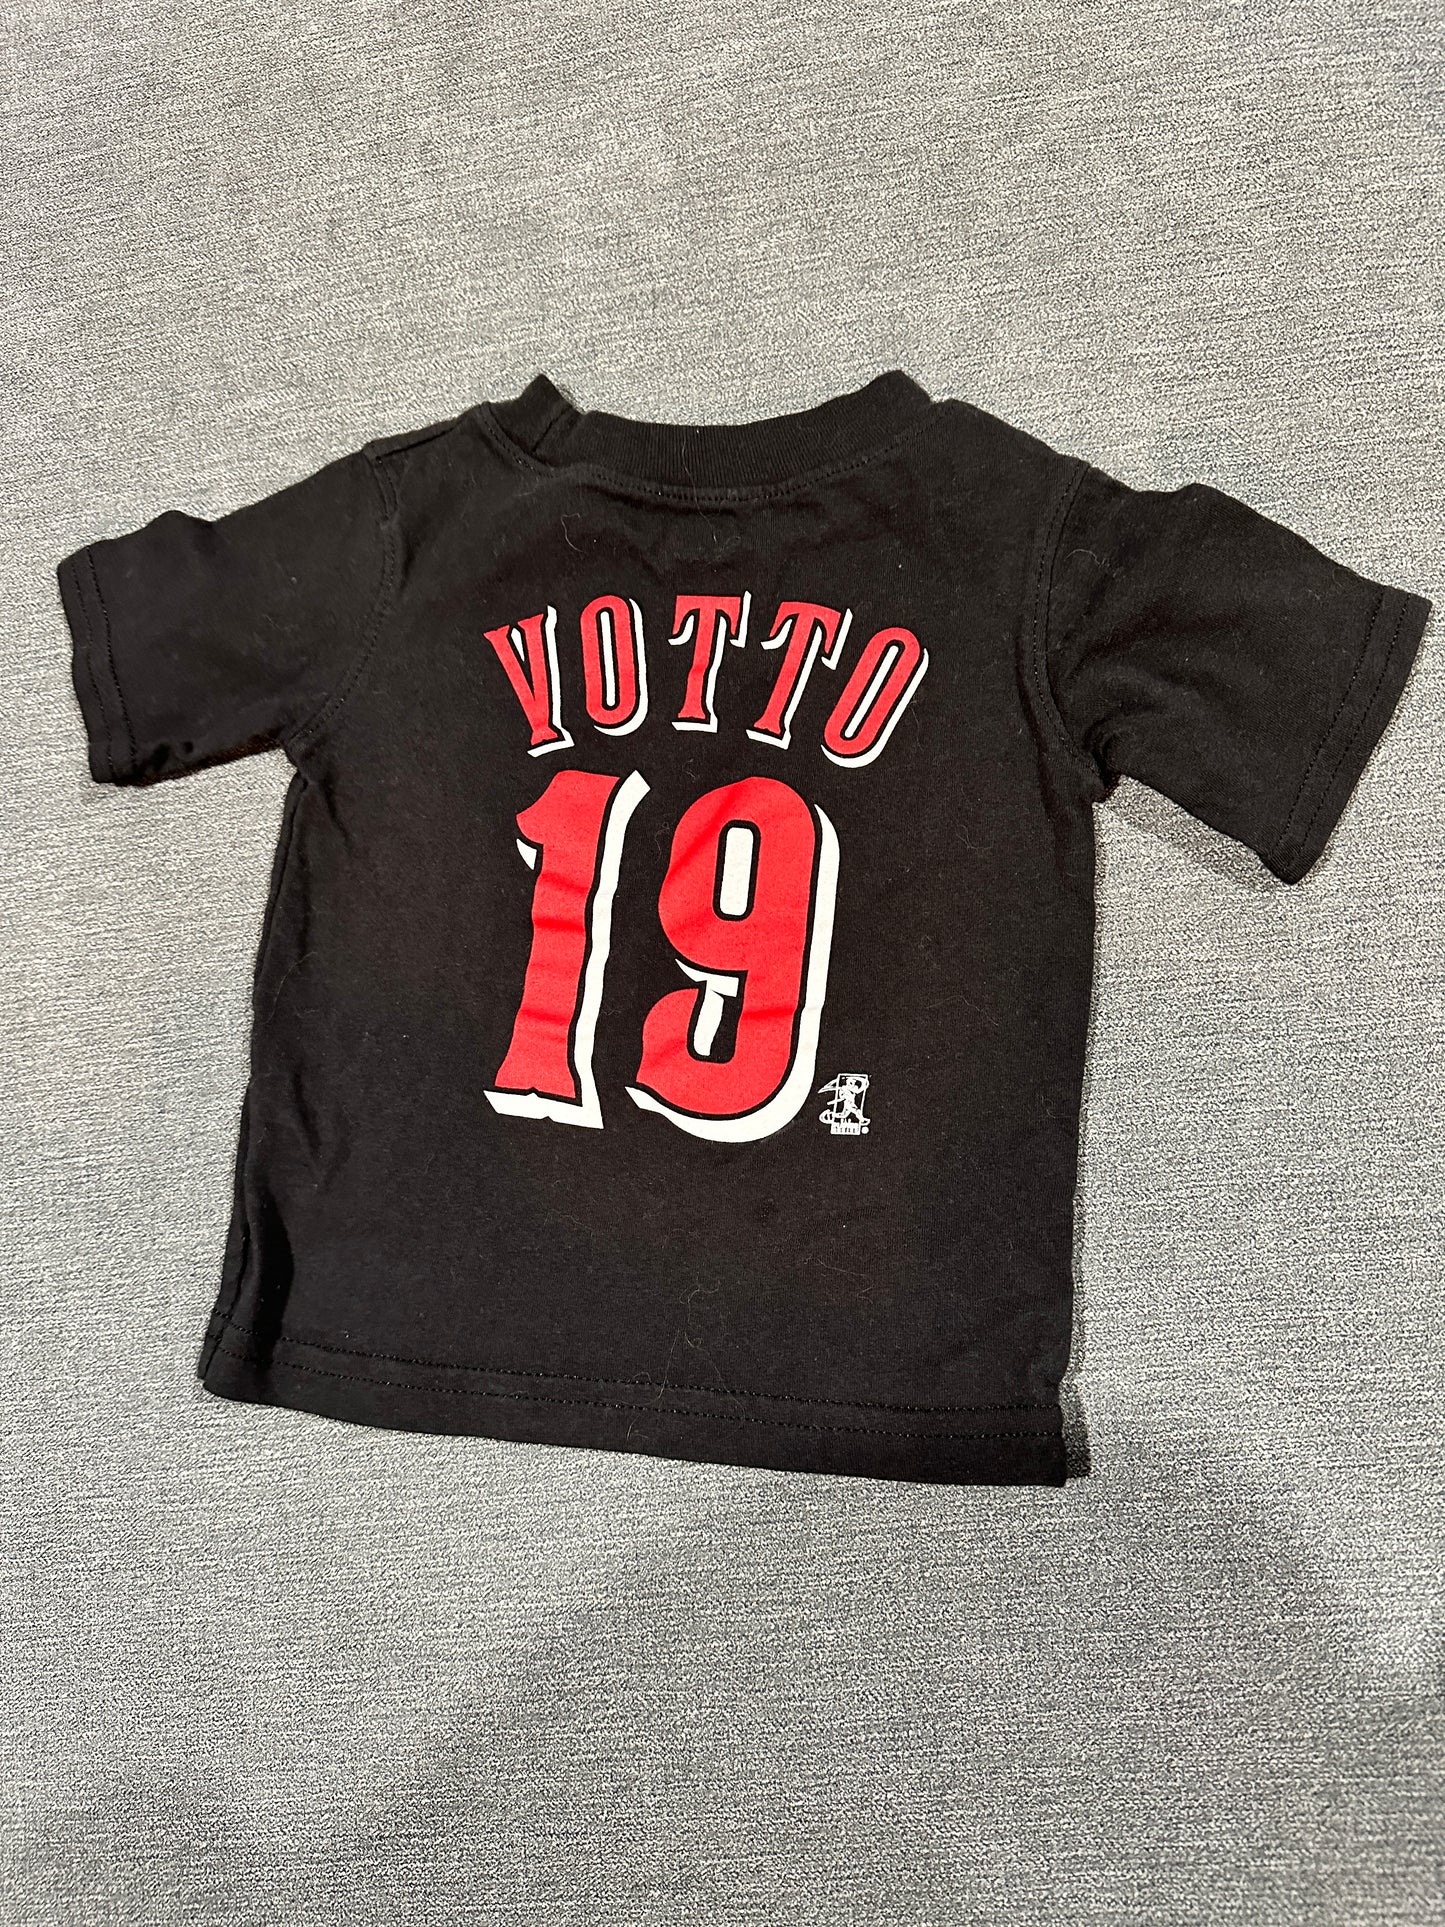 12 months, Cincinnati Reds, Joey Votto T-shirt jersey